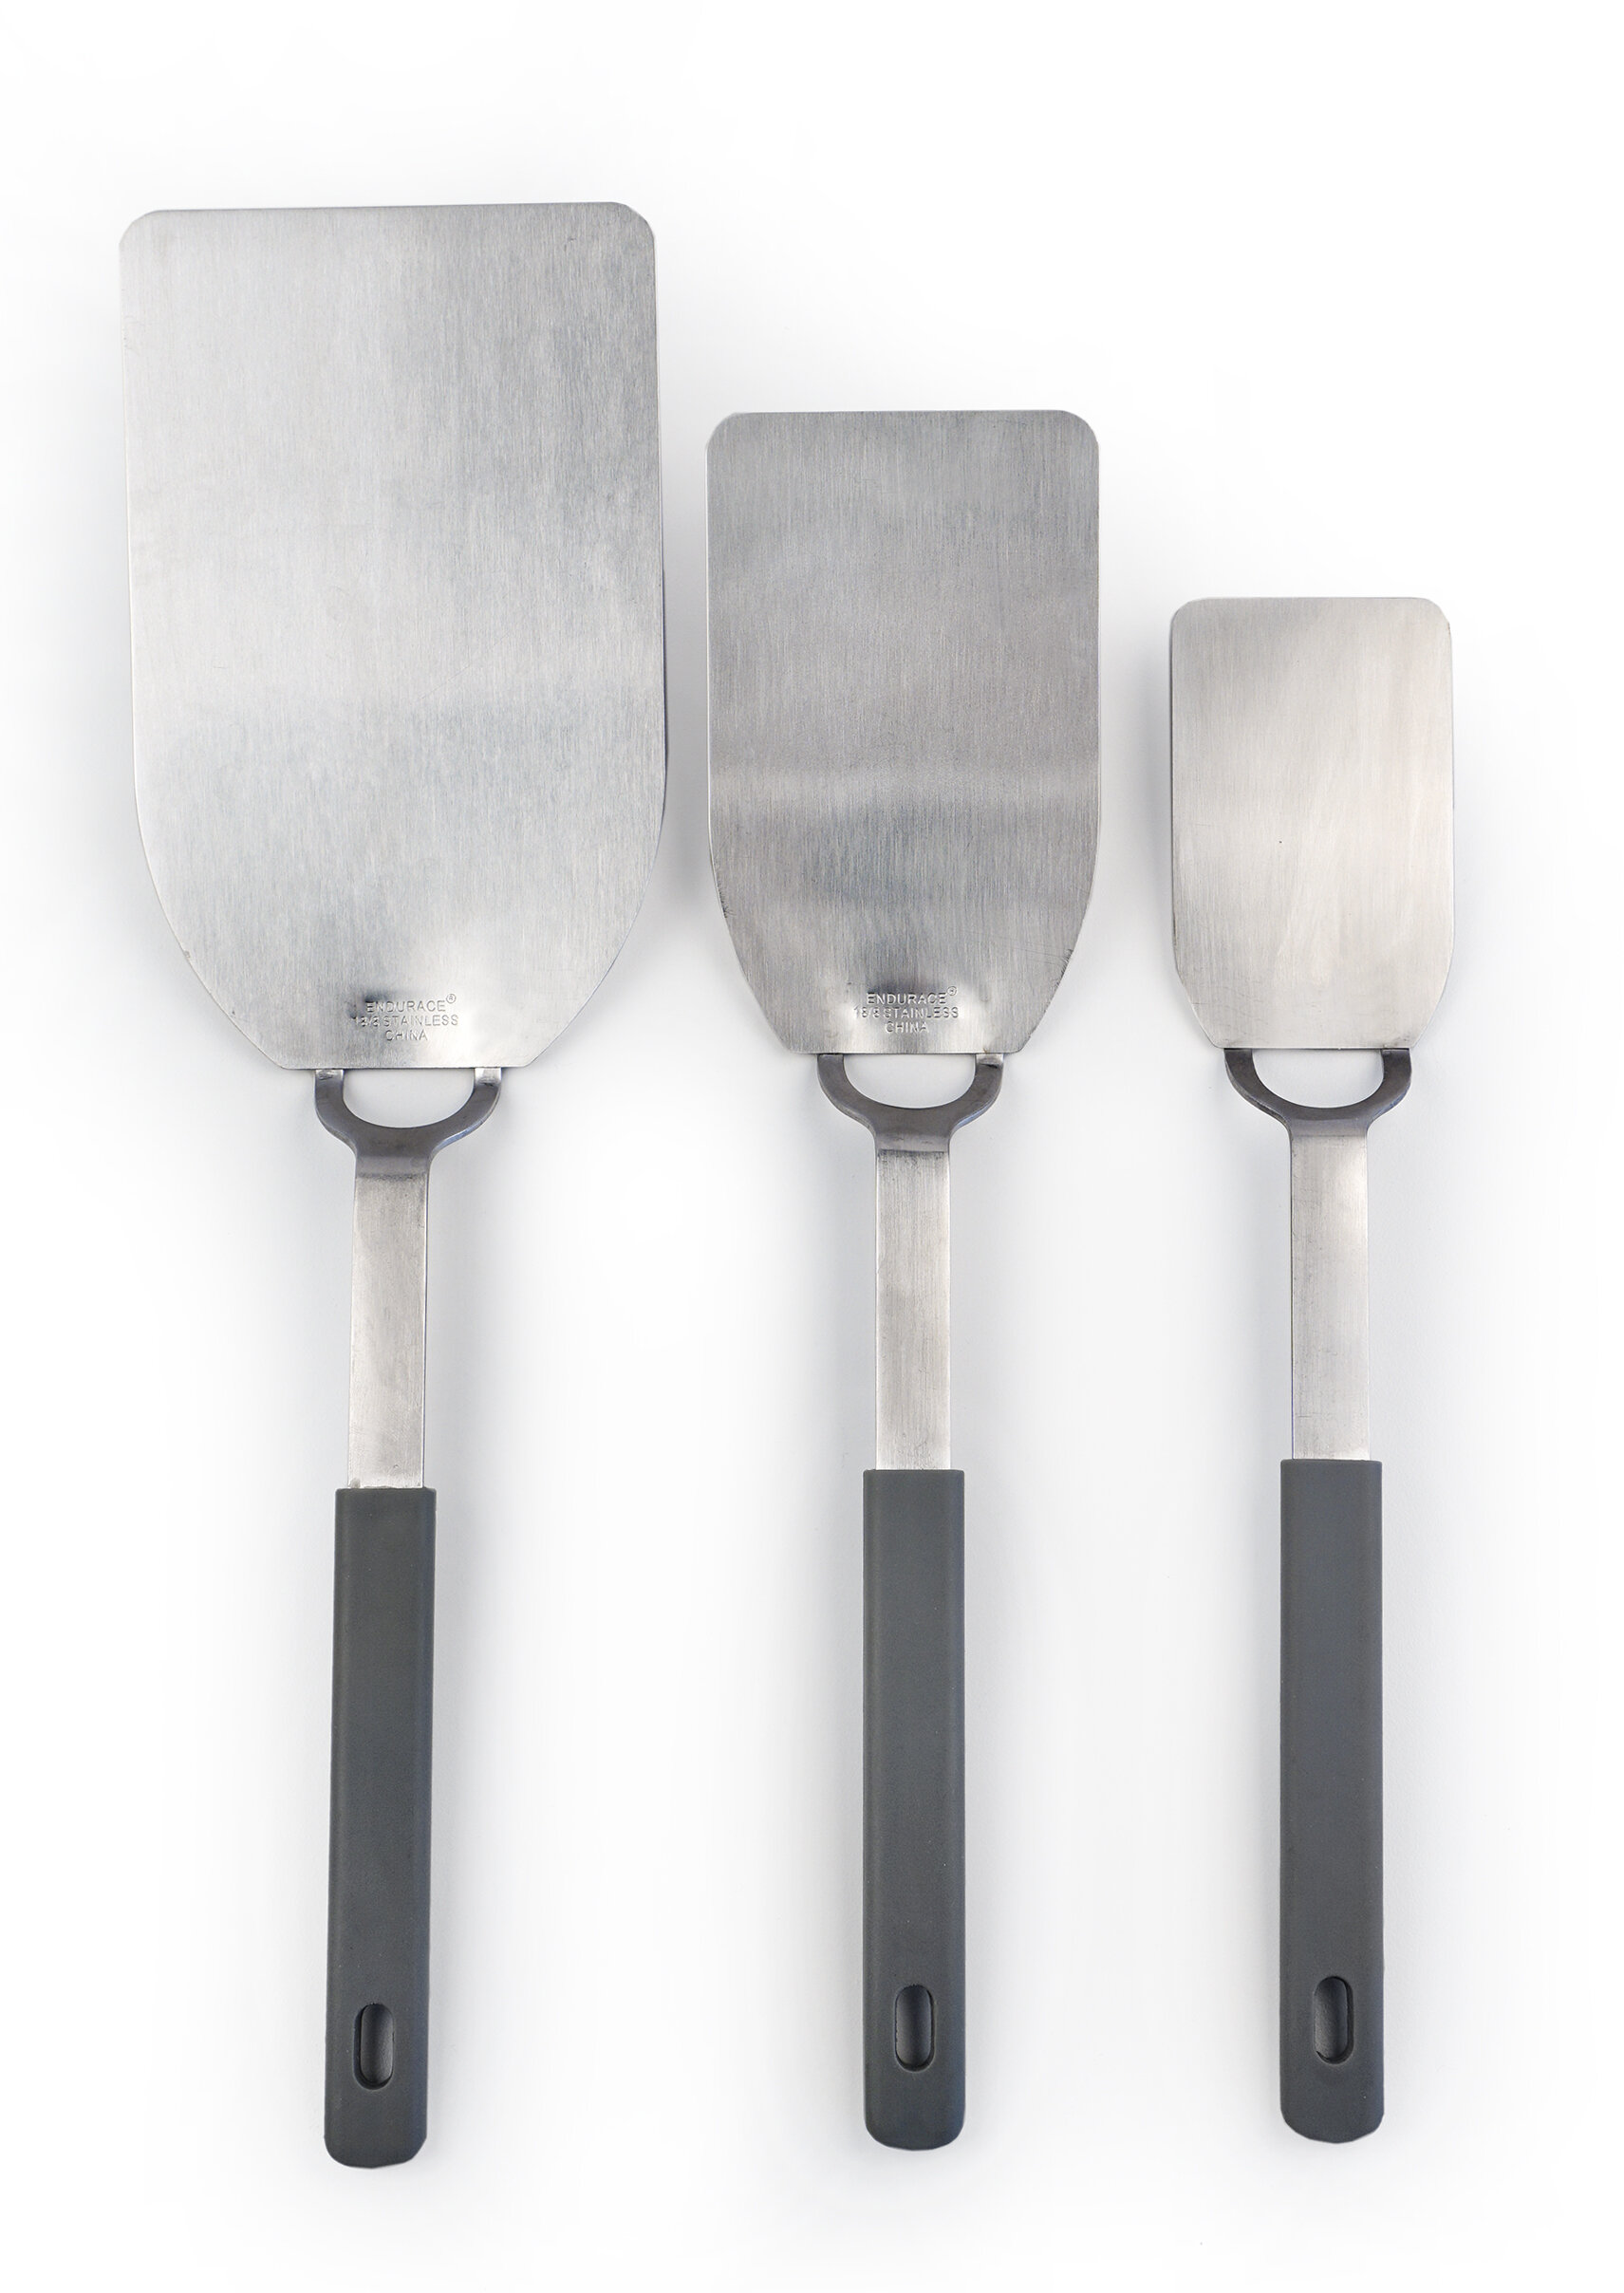 spatula sizes